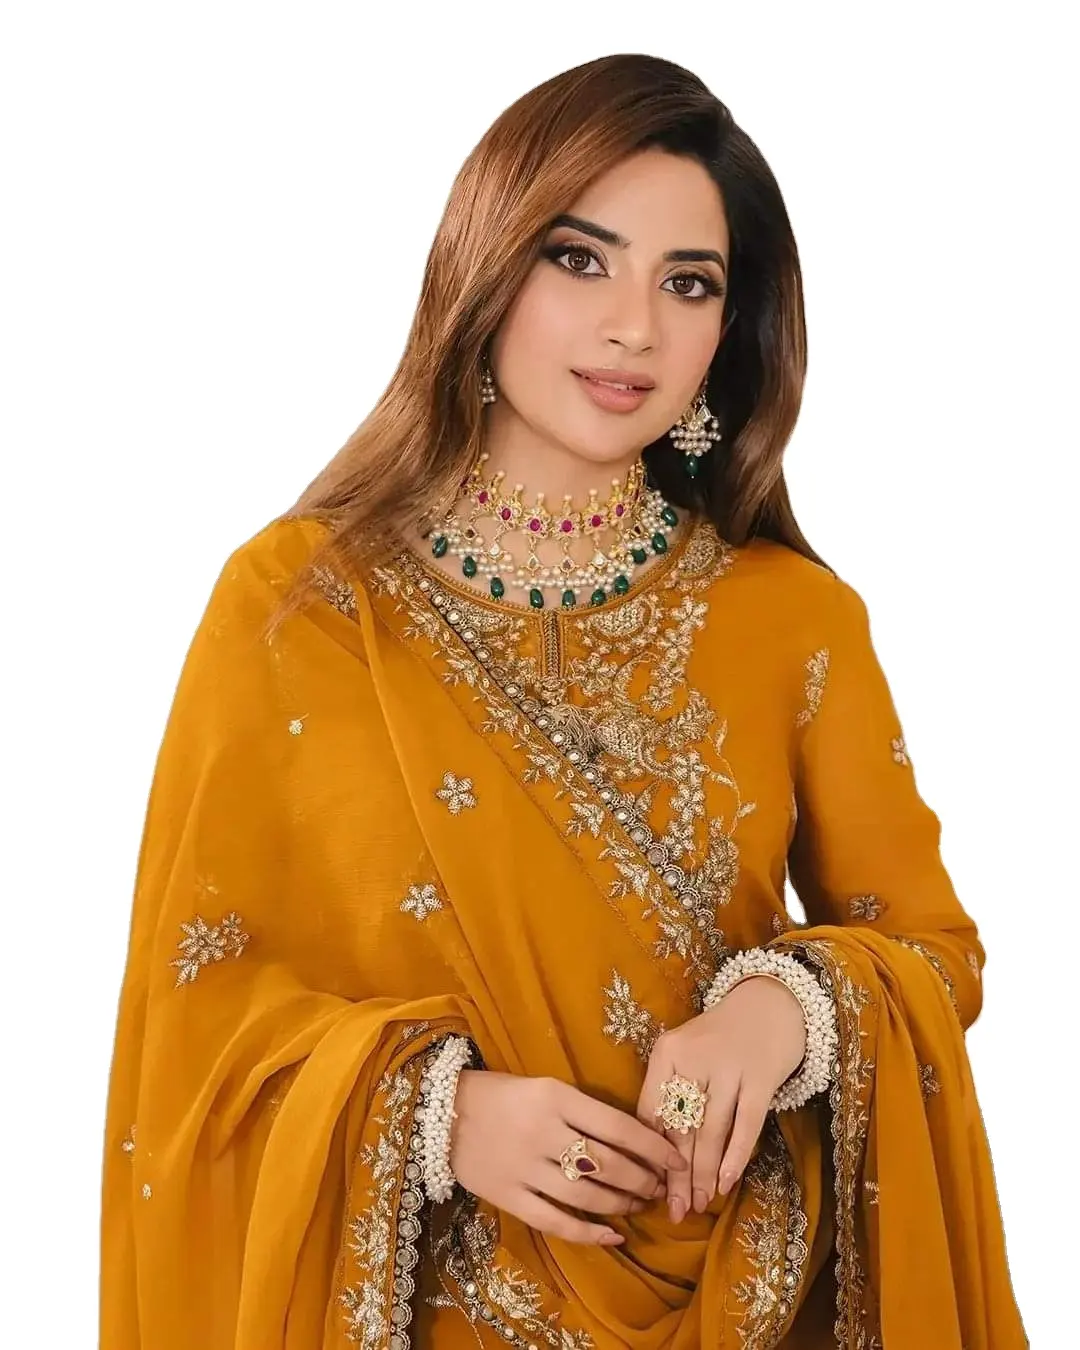 Superb Styles Pakistani Indian Women Ready Made Stylish Fashion Elegant Pakistani Dress Hot Selling Ready Made Suits 2009